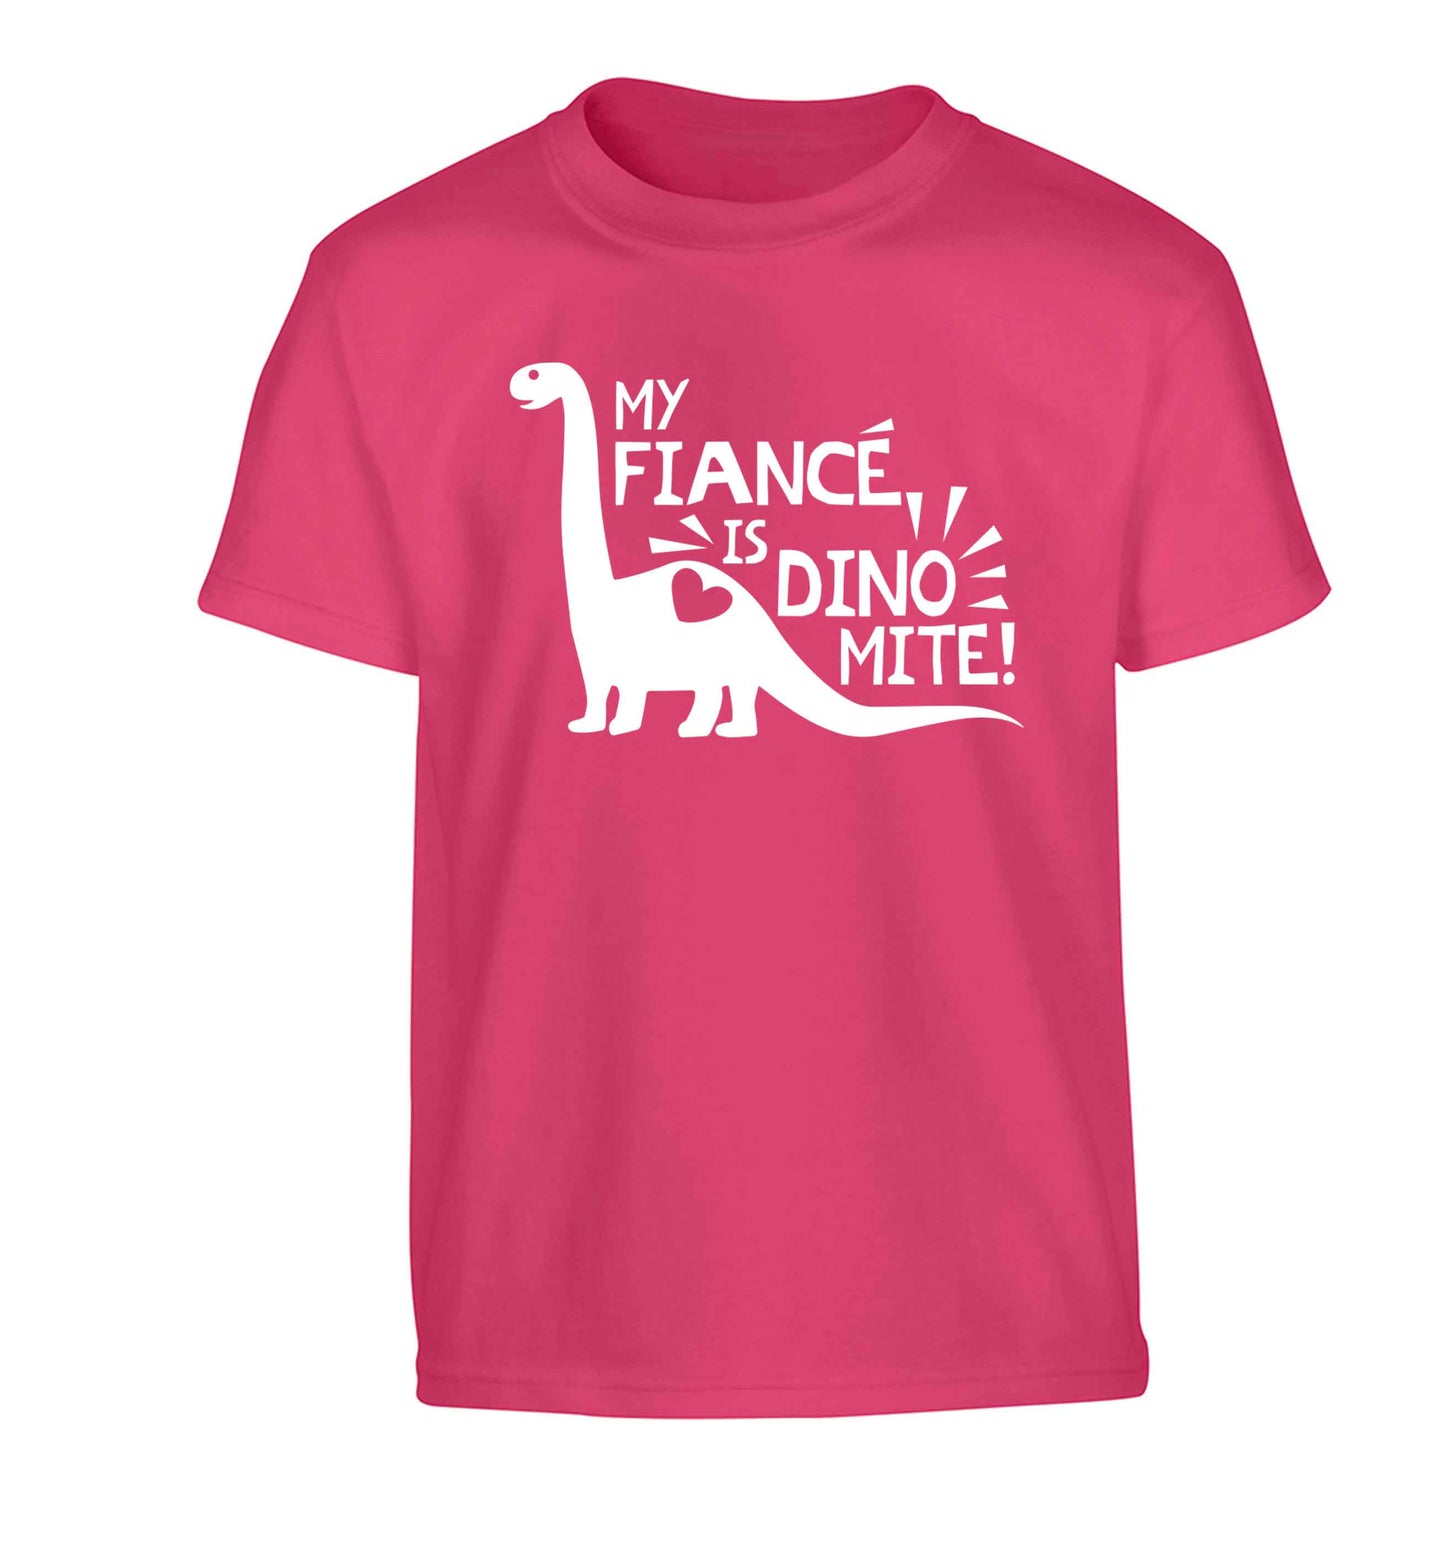 My fiance is dinomite! Children's pink Tshirt 12-13 Years